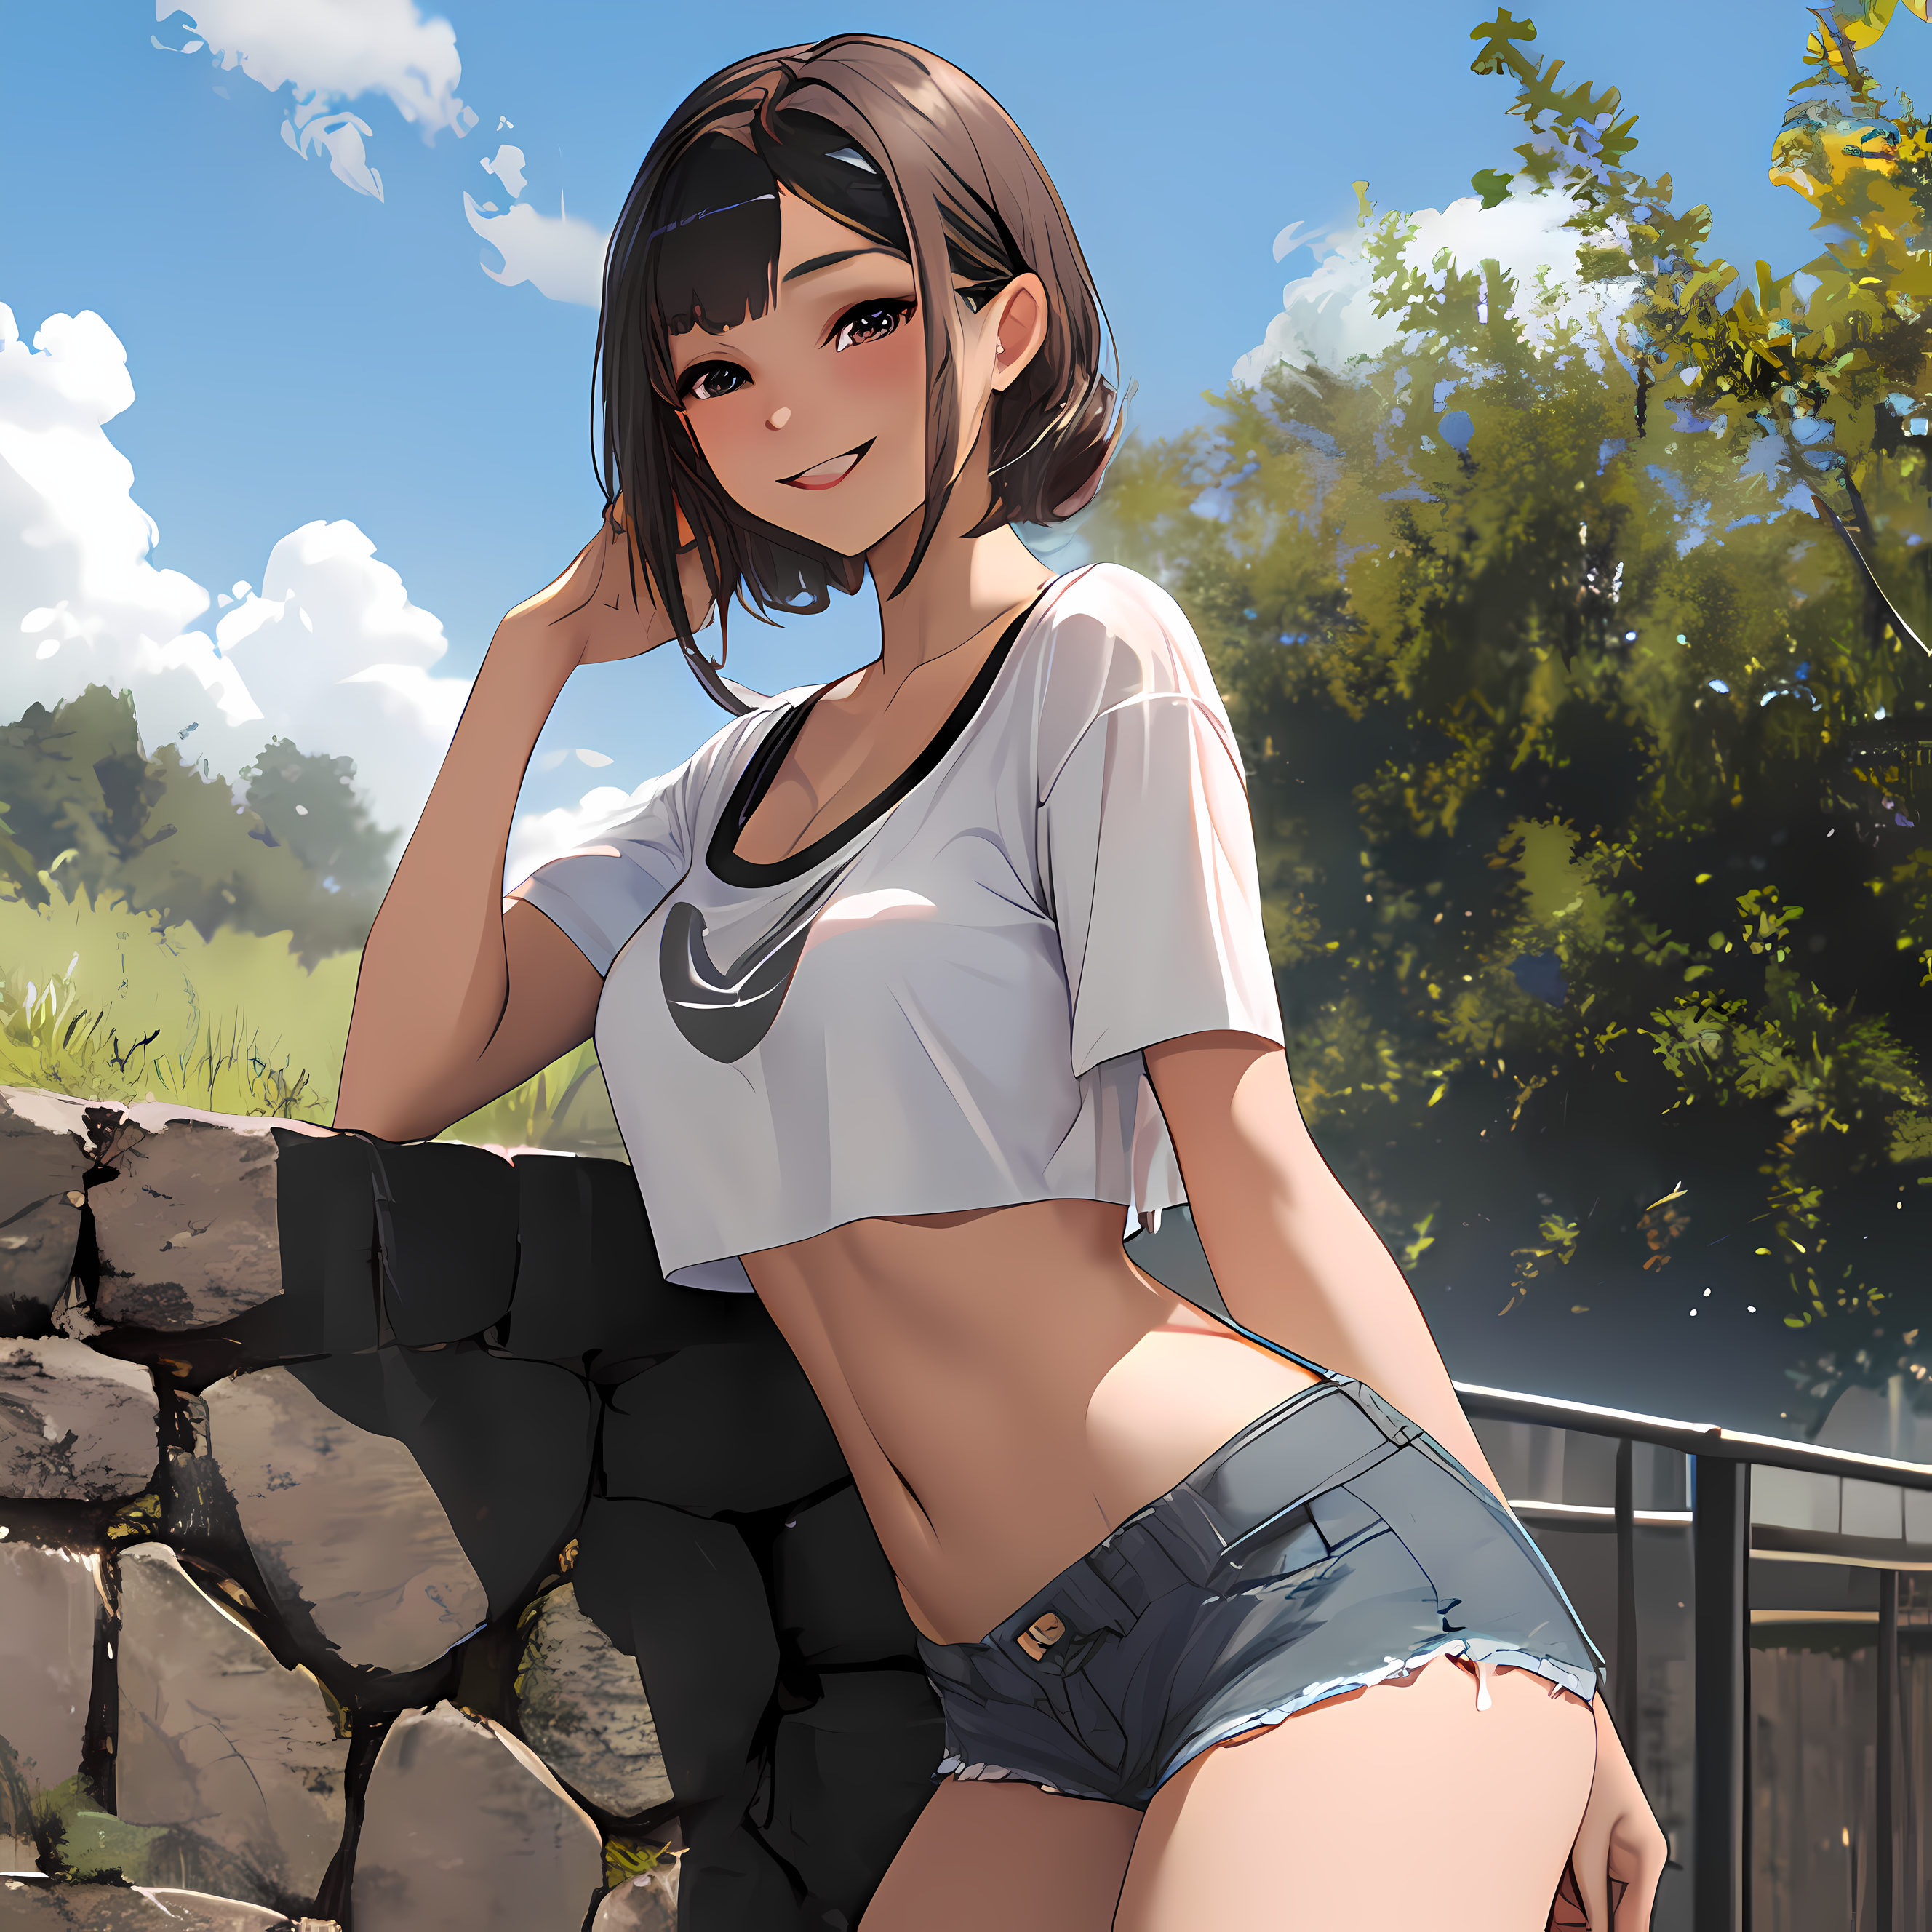 Anime Girl Wearing Shorts mina albums